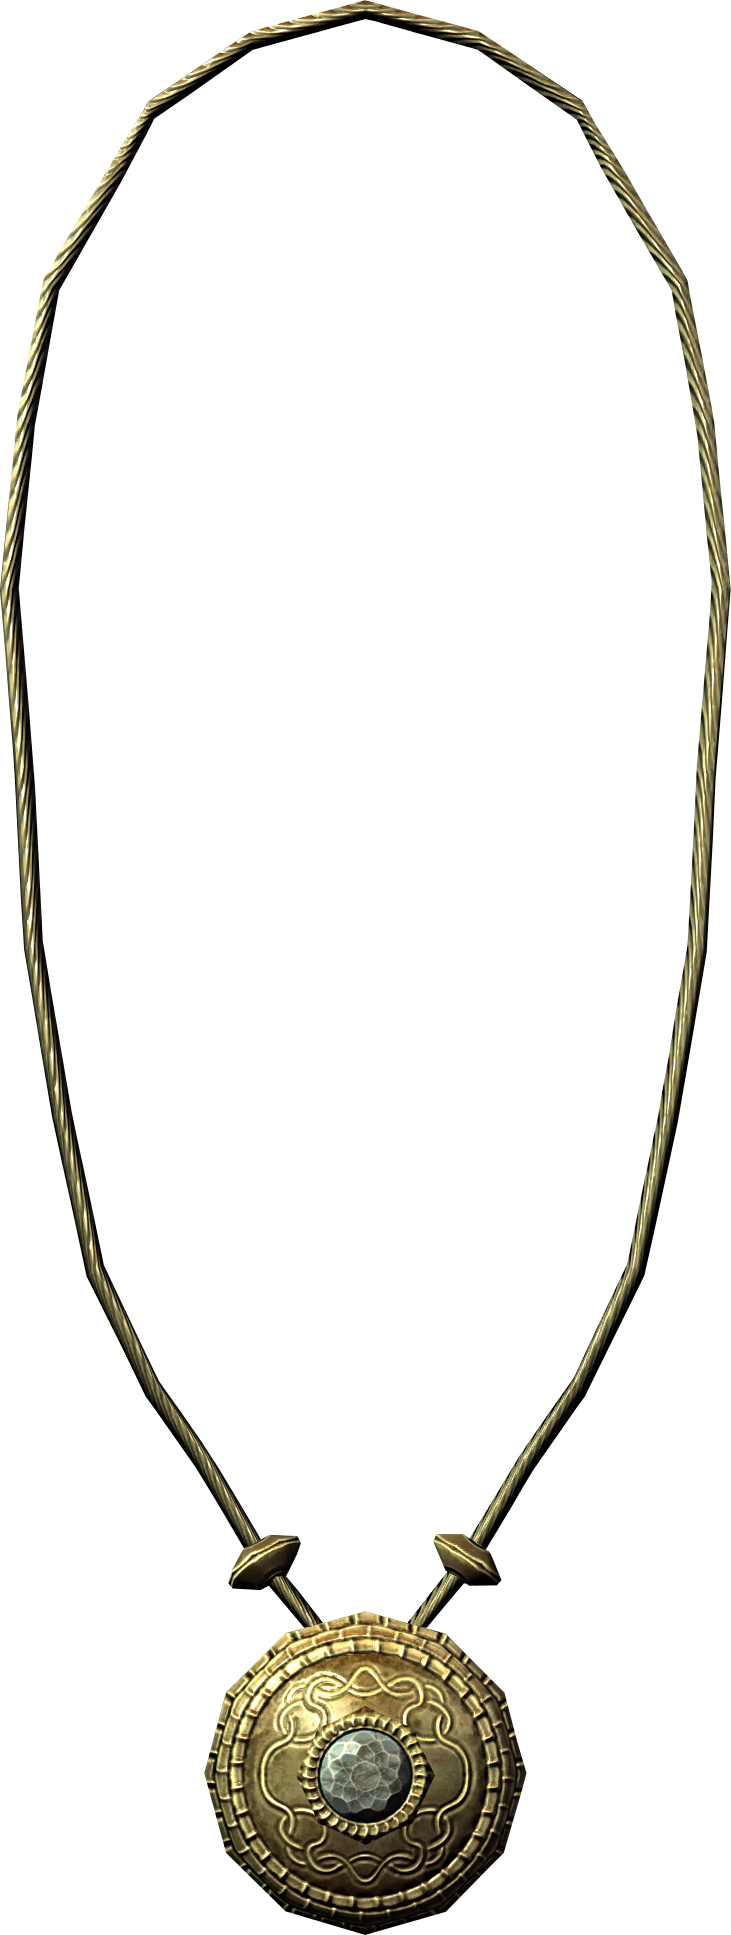 Gold Diamond Necklace - Gold Diamond Necklace Skyrim (731x1935)